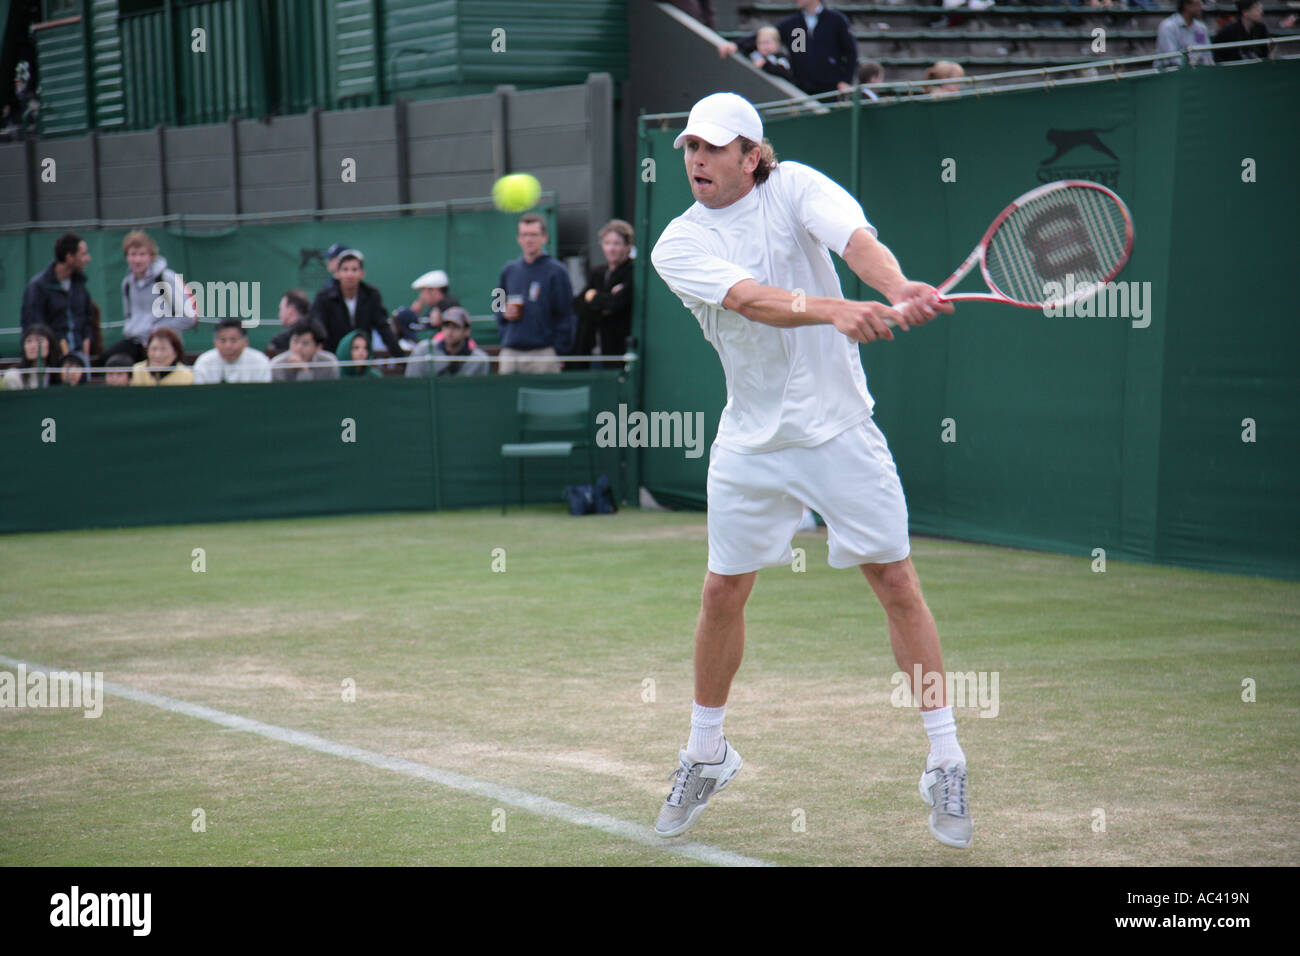 Jordan Kerr, con una devolución de revés, el Torneo de Tenis de Wimbledon, Londres, Inglaterra. Foto de stock